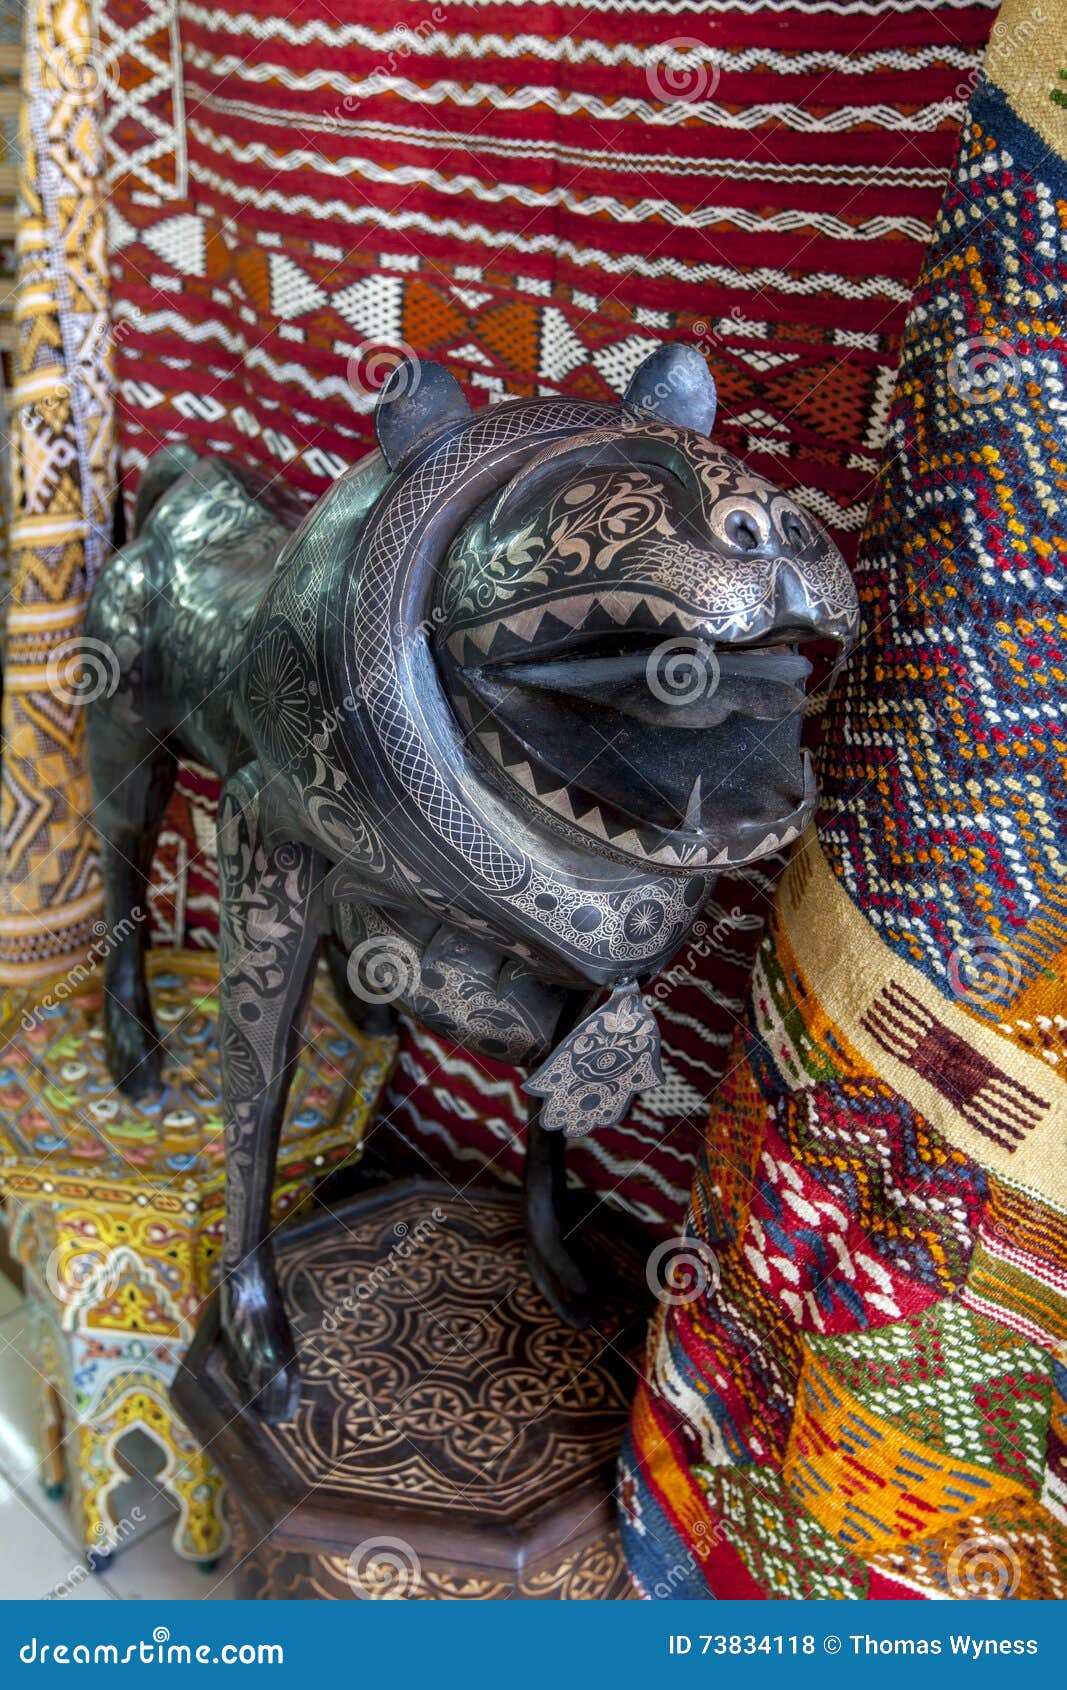 Un leone insolito come l'ornamento con le incisioni delicate da vendere in un negozio in Meknes nel Marocco Meknes è nominato dopo una tribù di berbero che, è stata conosciuta come Miknasa (nome indigeno di berbero: Imeknasen) nei documenti africani del nord medievali Meknes è una delle quattro città imperiali del Marocco ed è stato fondato nel XI secolo